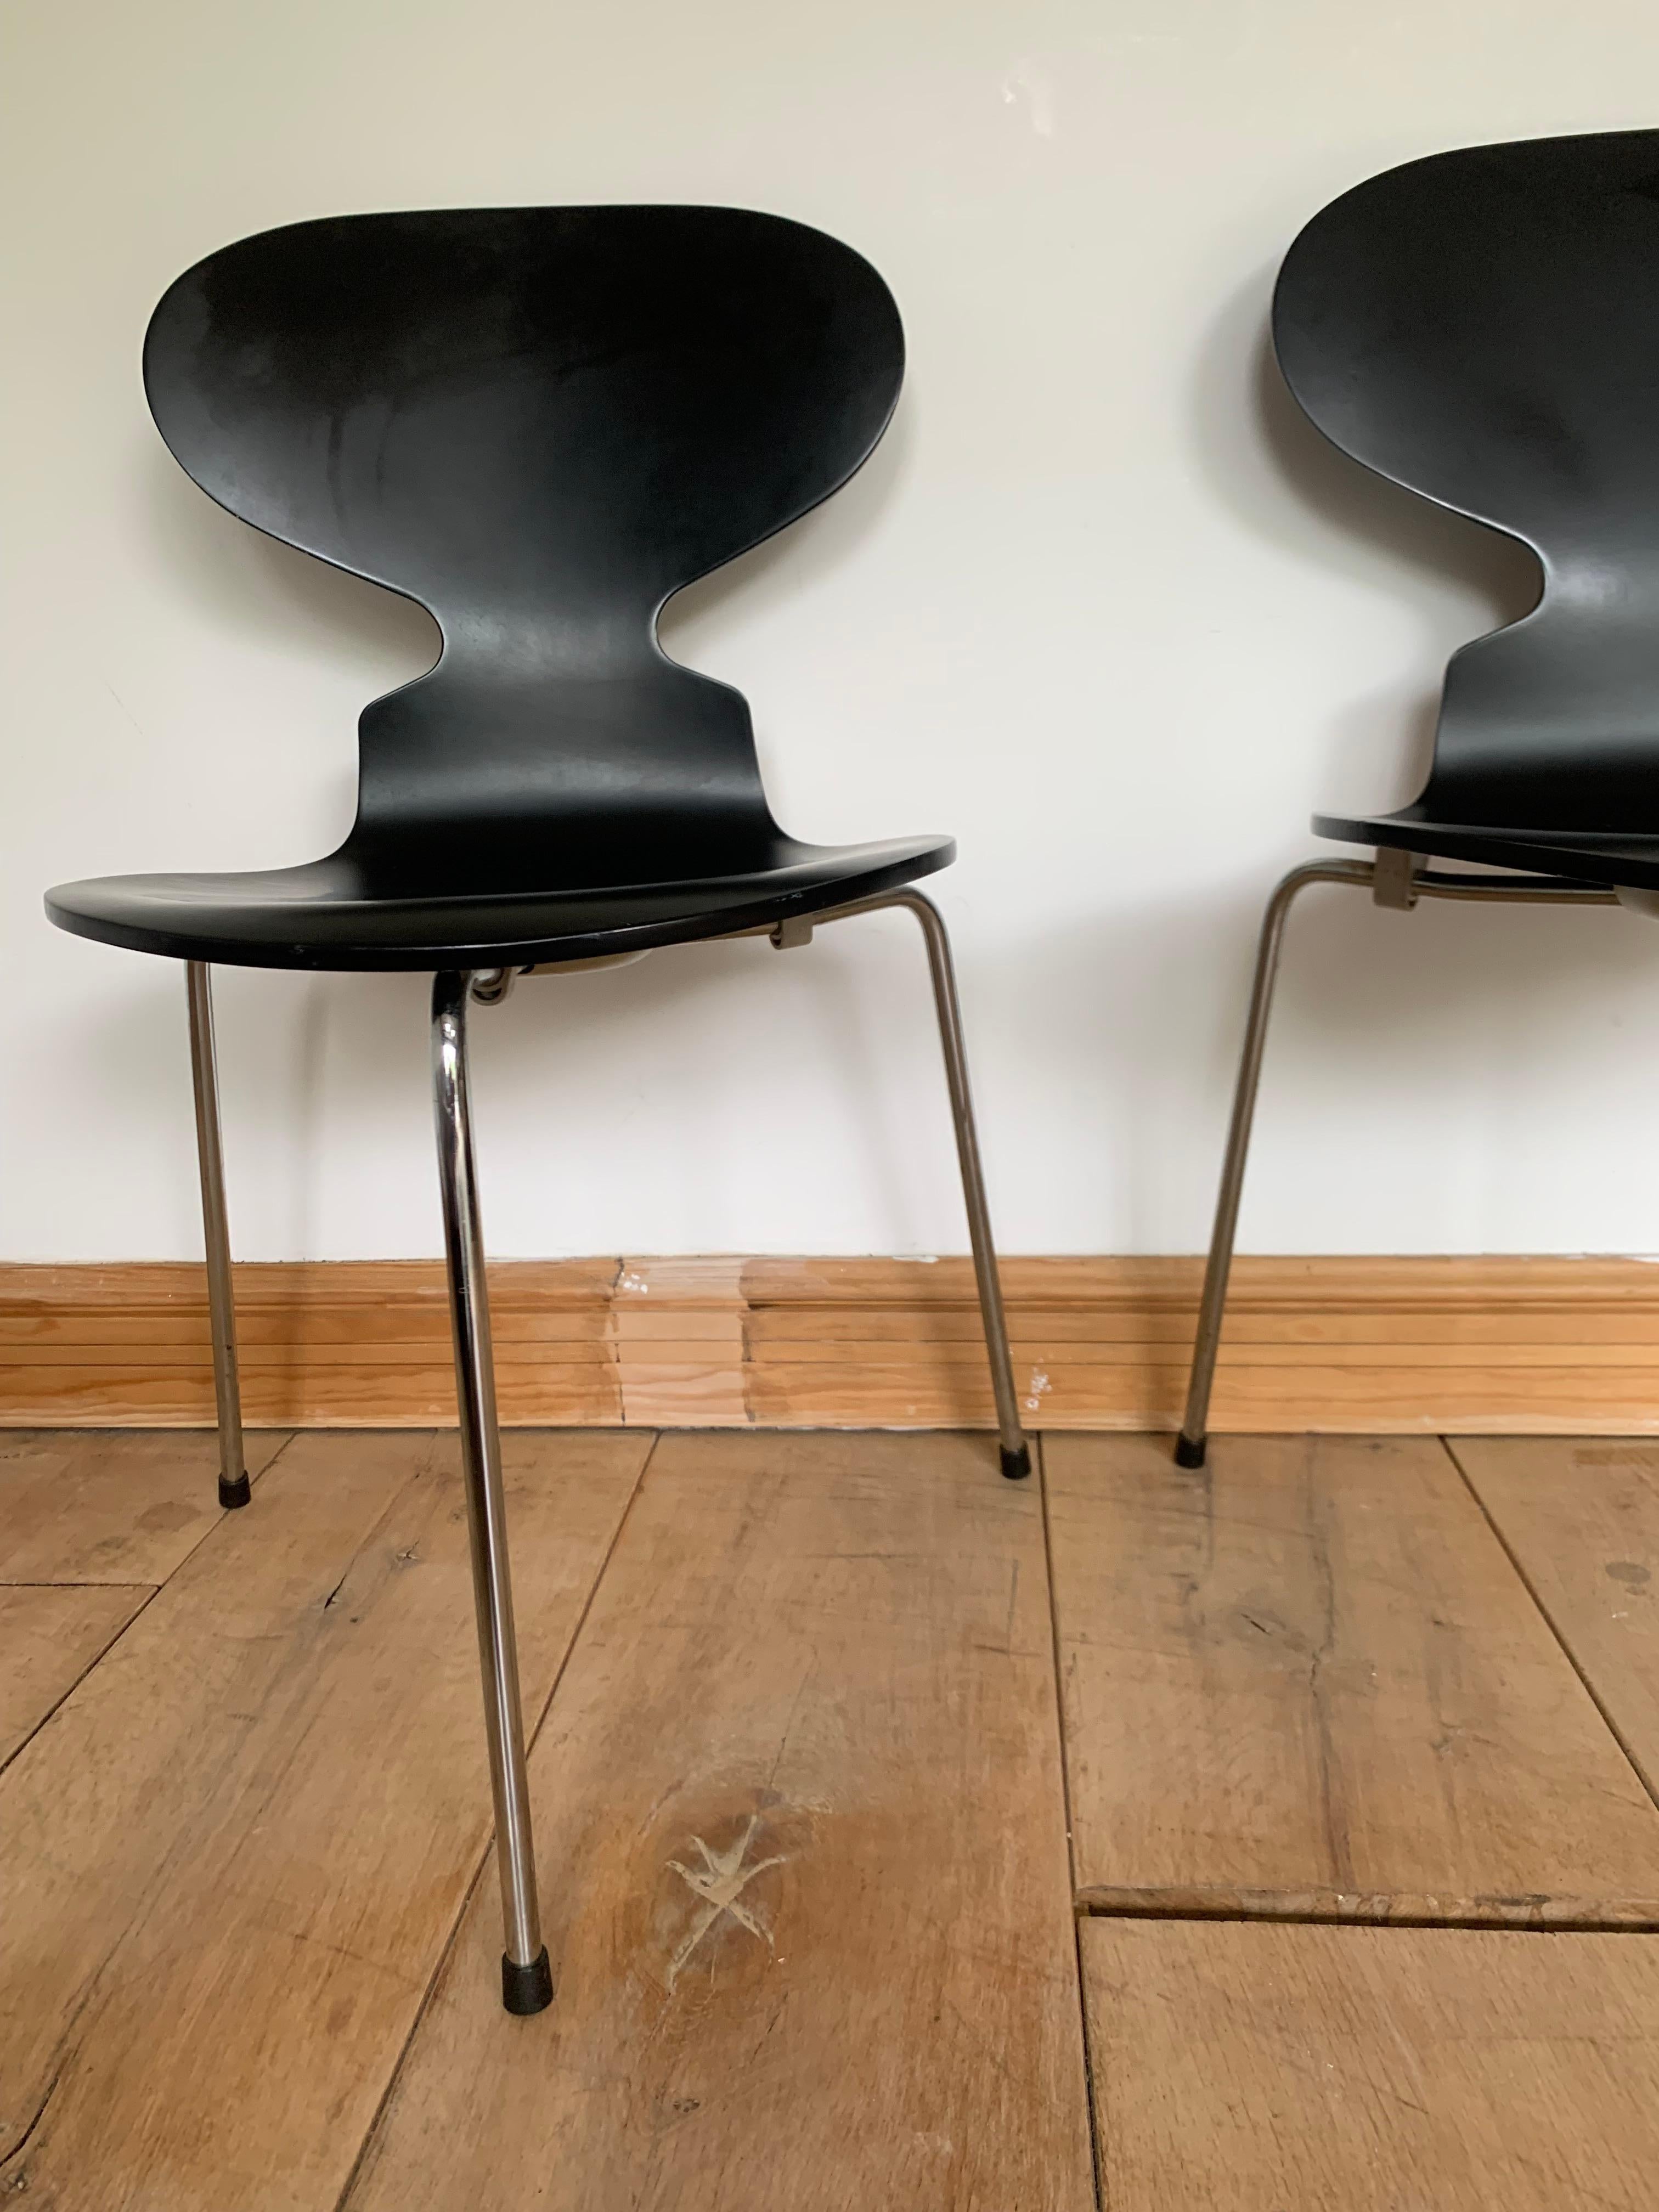 Chaise Fourmi noire à trois pieds d'Arne Jacobsen, originale et accrocheuse.
La chaise Ant est un classique de la conception moderne des chaises. Il a été conçu en 1952 par Arne Jacobsen pour être utilisé dans la cantine de l'entreprise